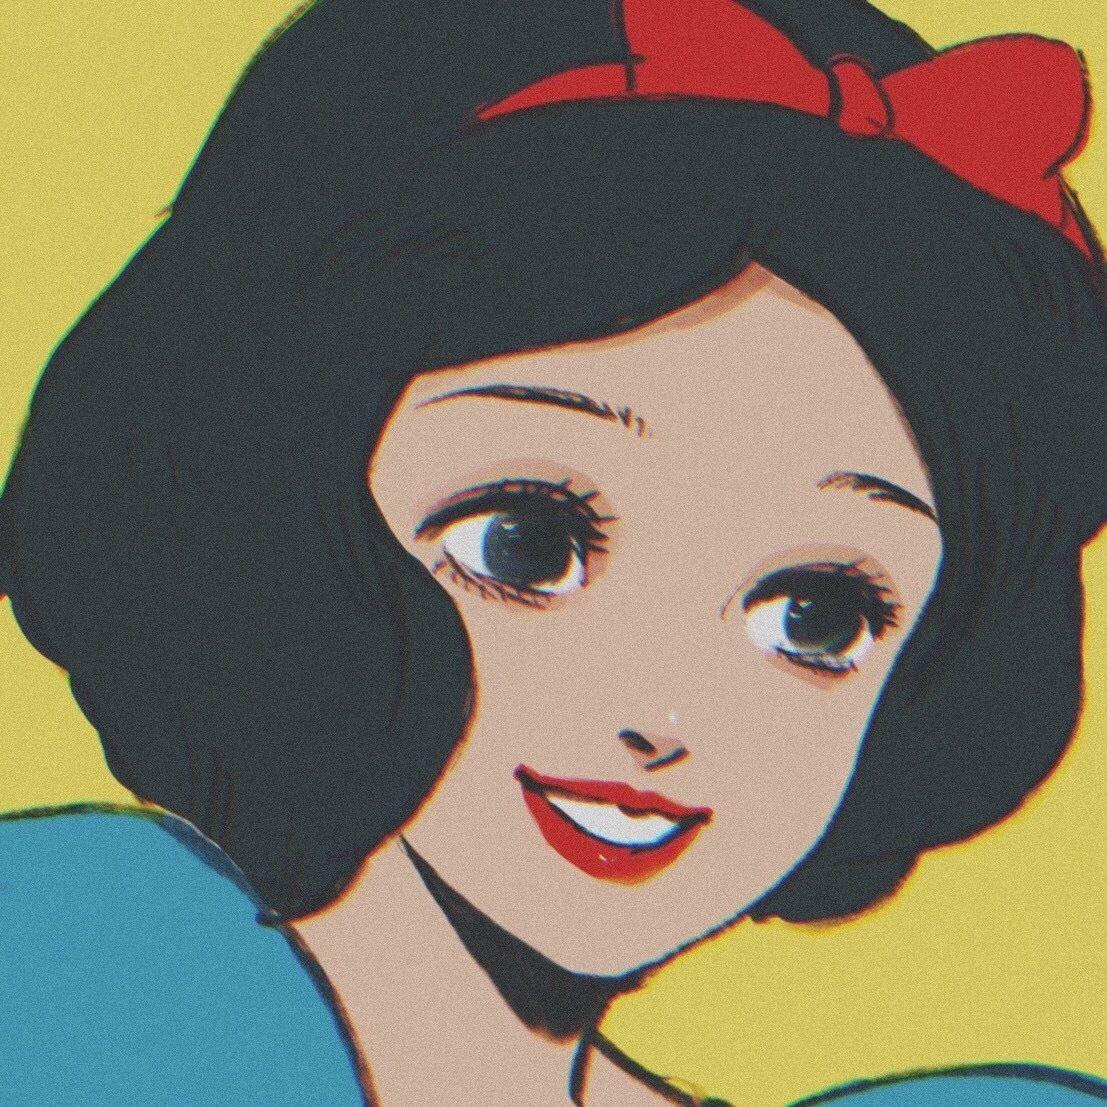 有哪些特别好看的迪士尼公主壁纸/头像? - 知乎